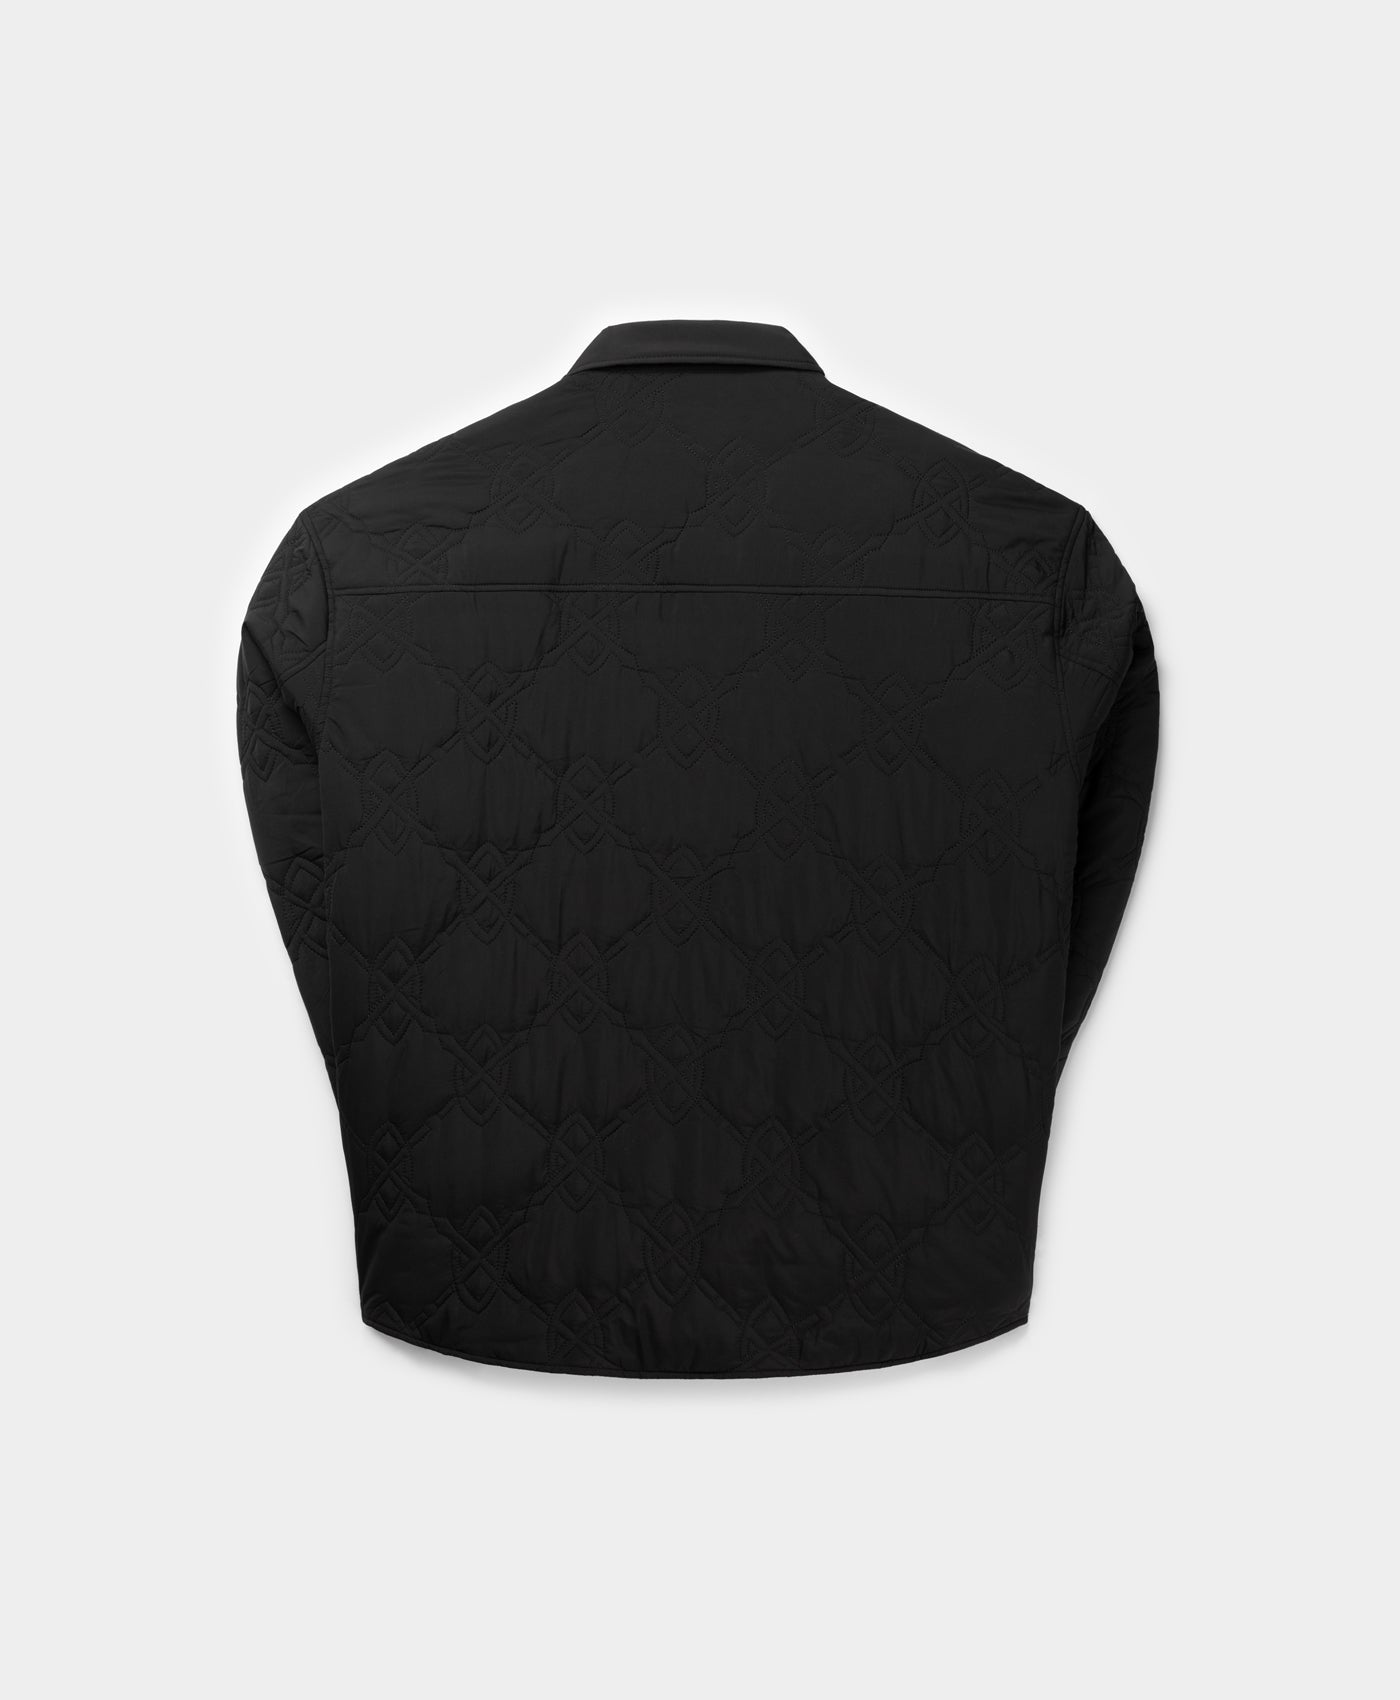 DP - Black Rajub LS Shirt - Packshot - Rear